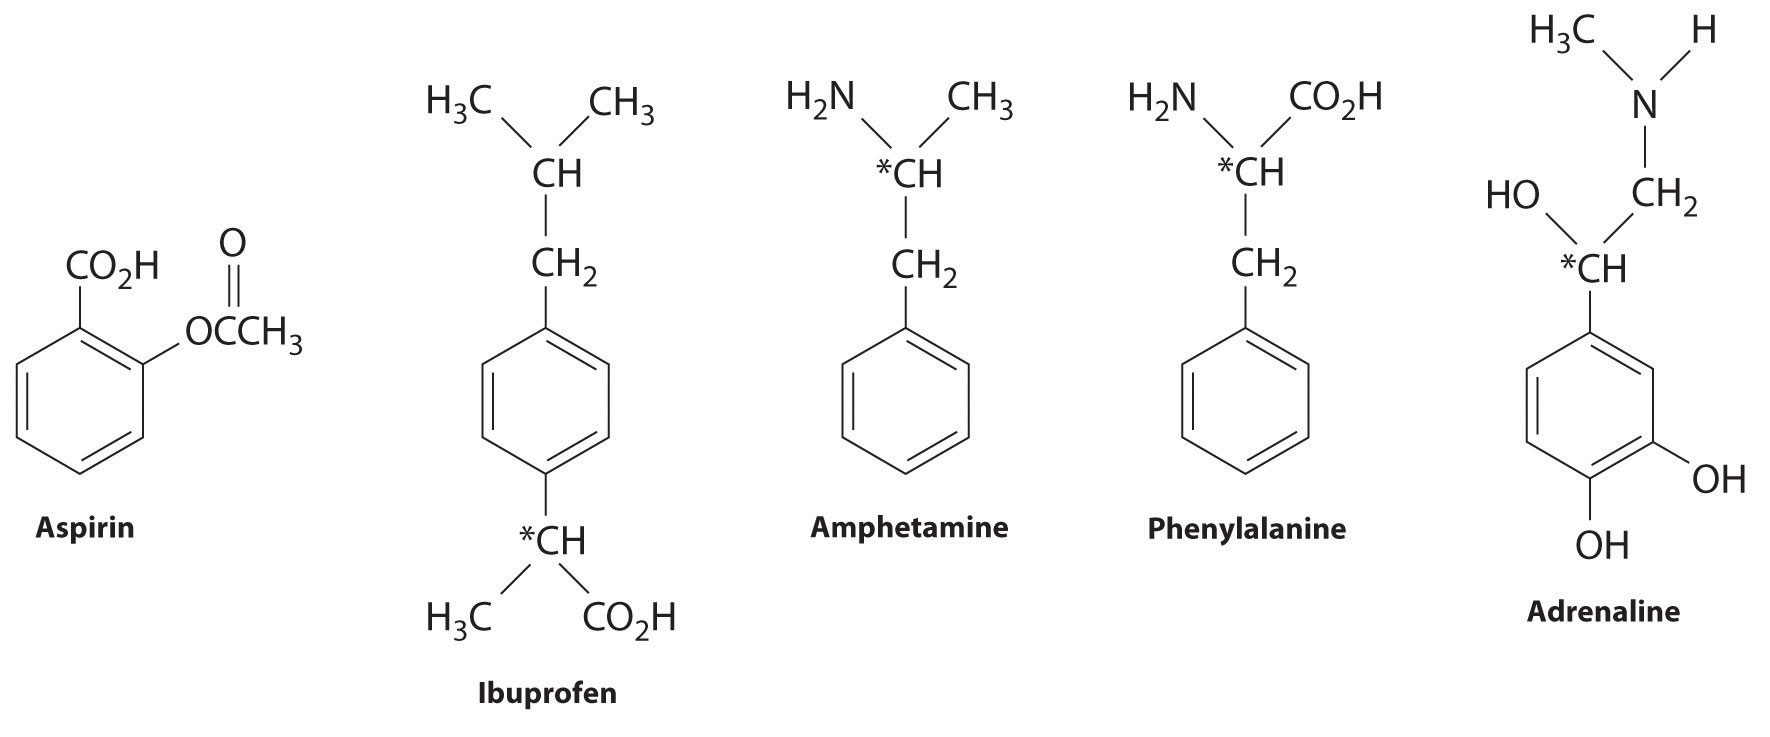 Lewis structures of aspirin, ibuprofen, amphetamine, phenylalanine, and adrenaline. 